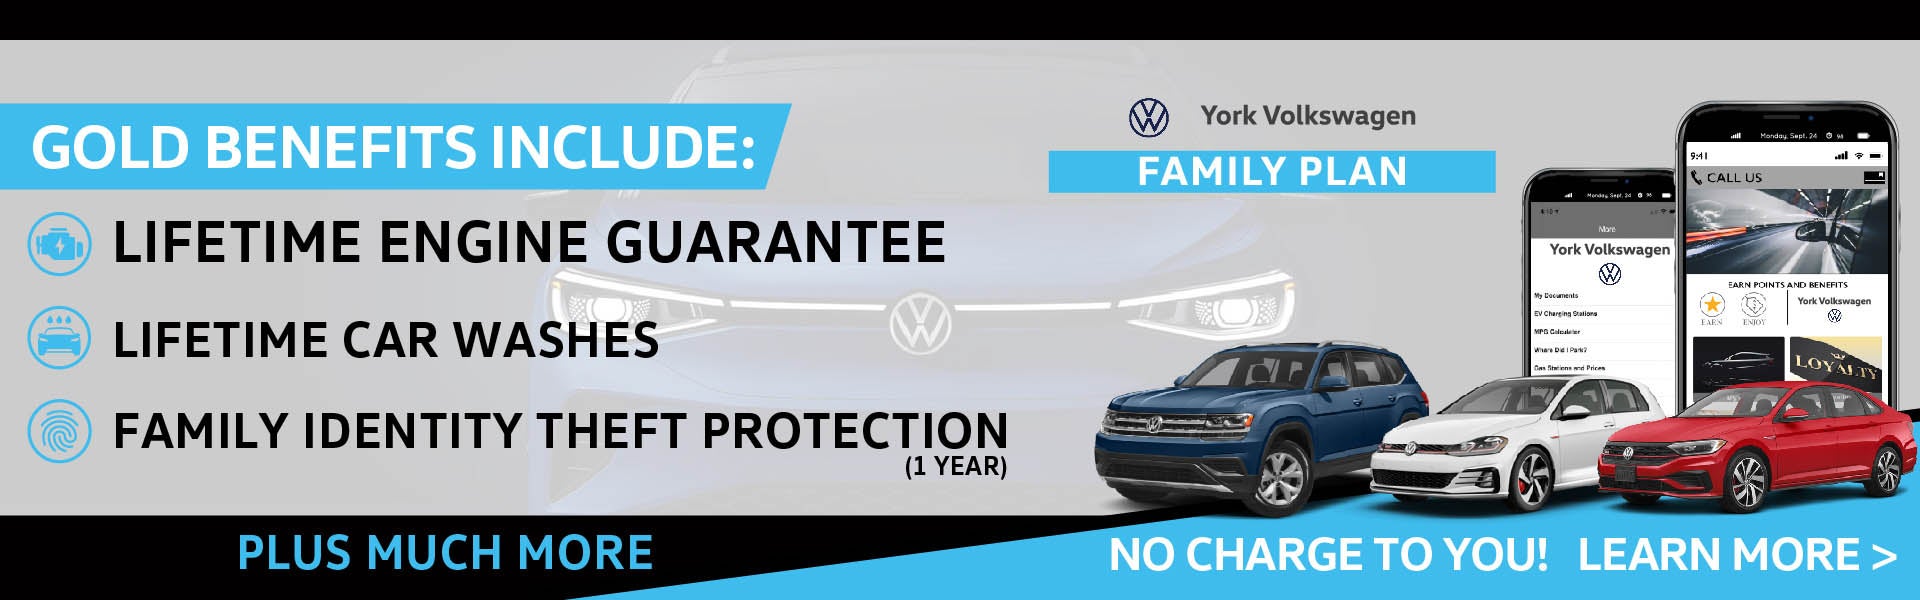 York Volkswagen Family Plan